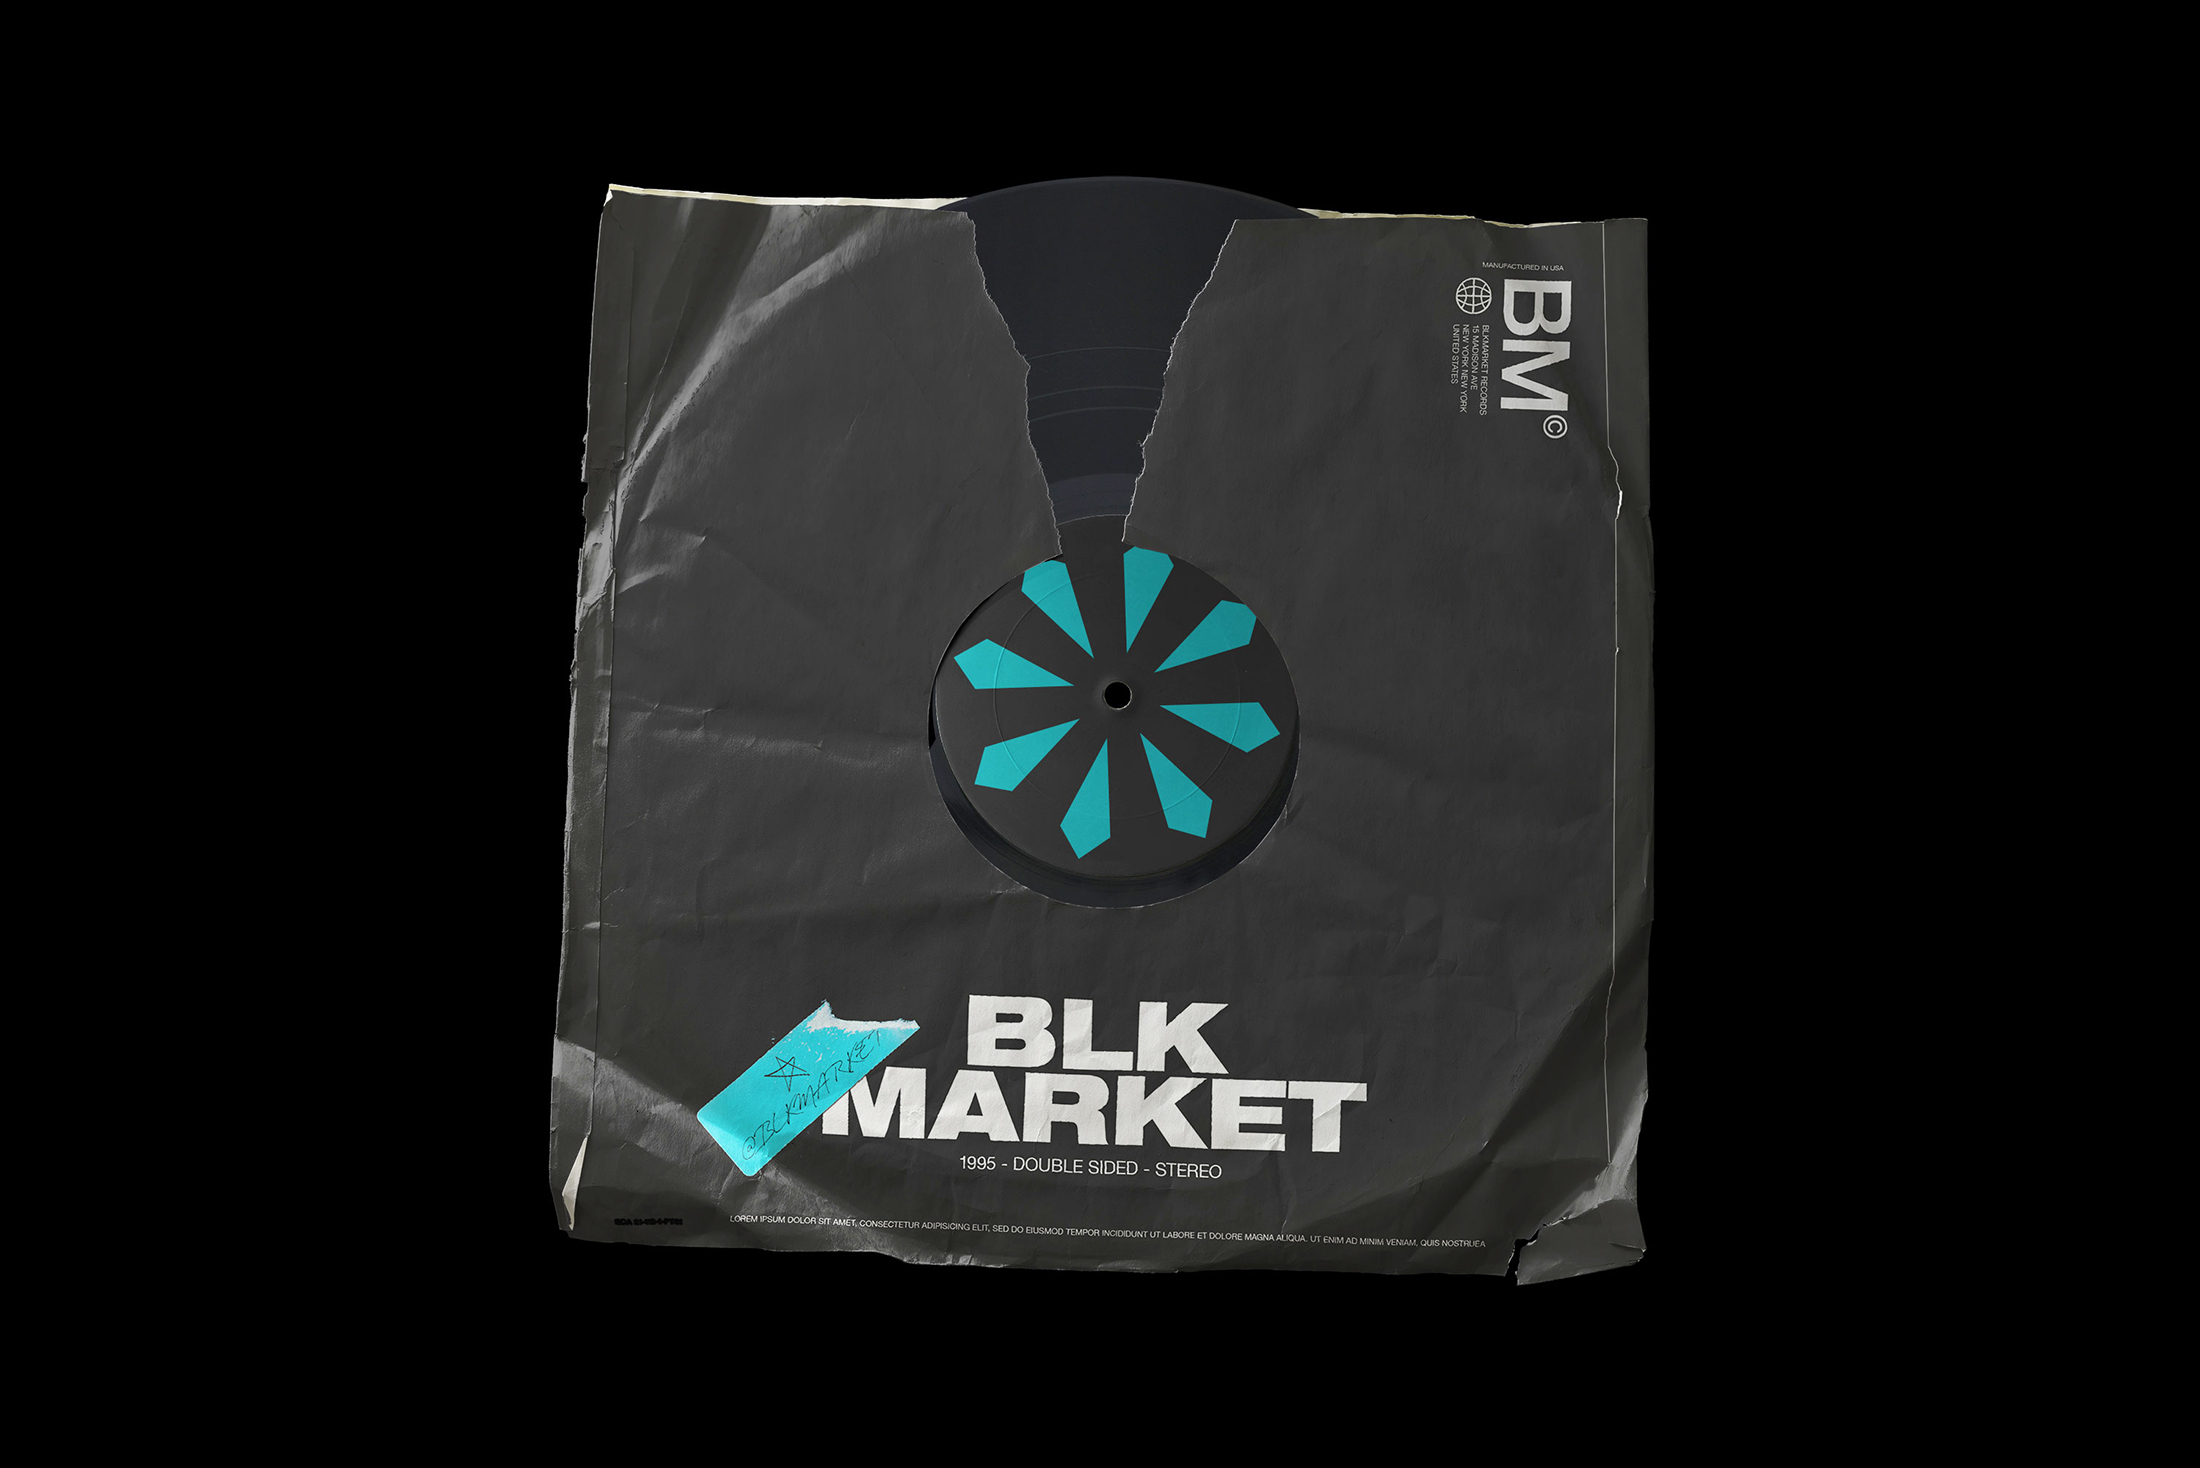 复古撕裂的黑胶唱片纸袋包装封面设计提案样机模板 Blkmar